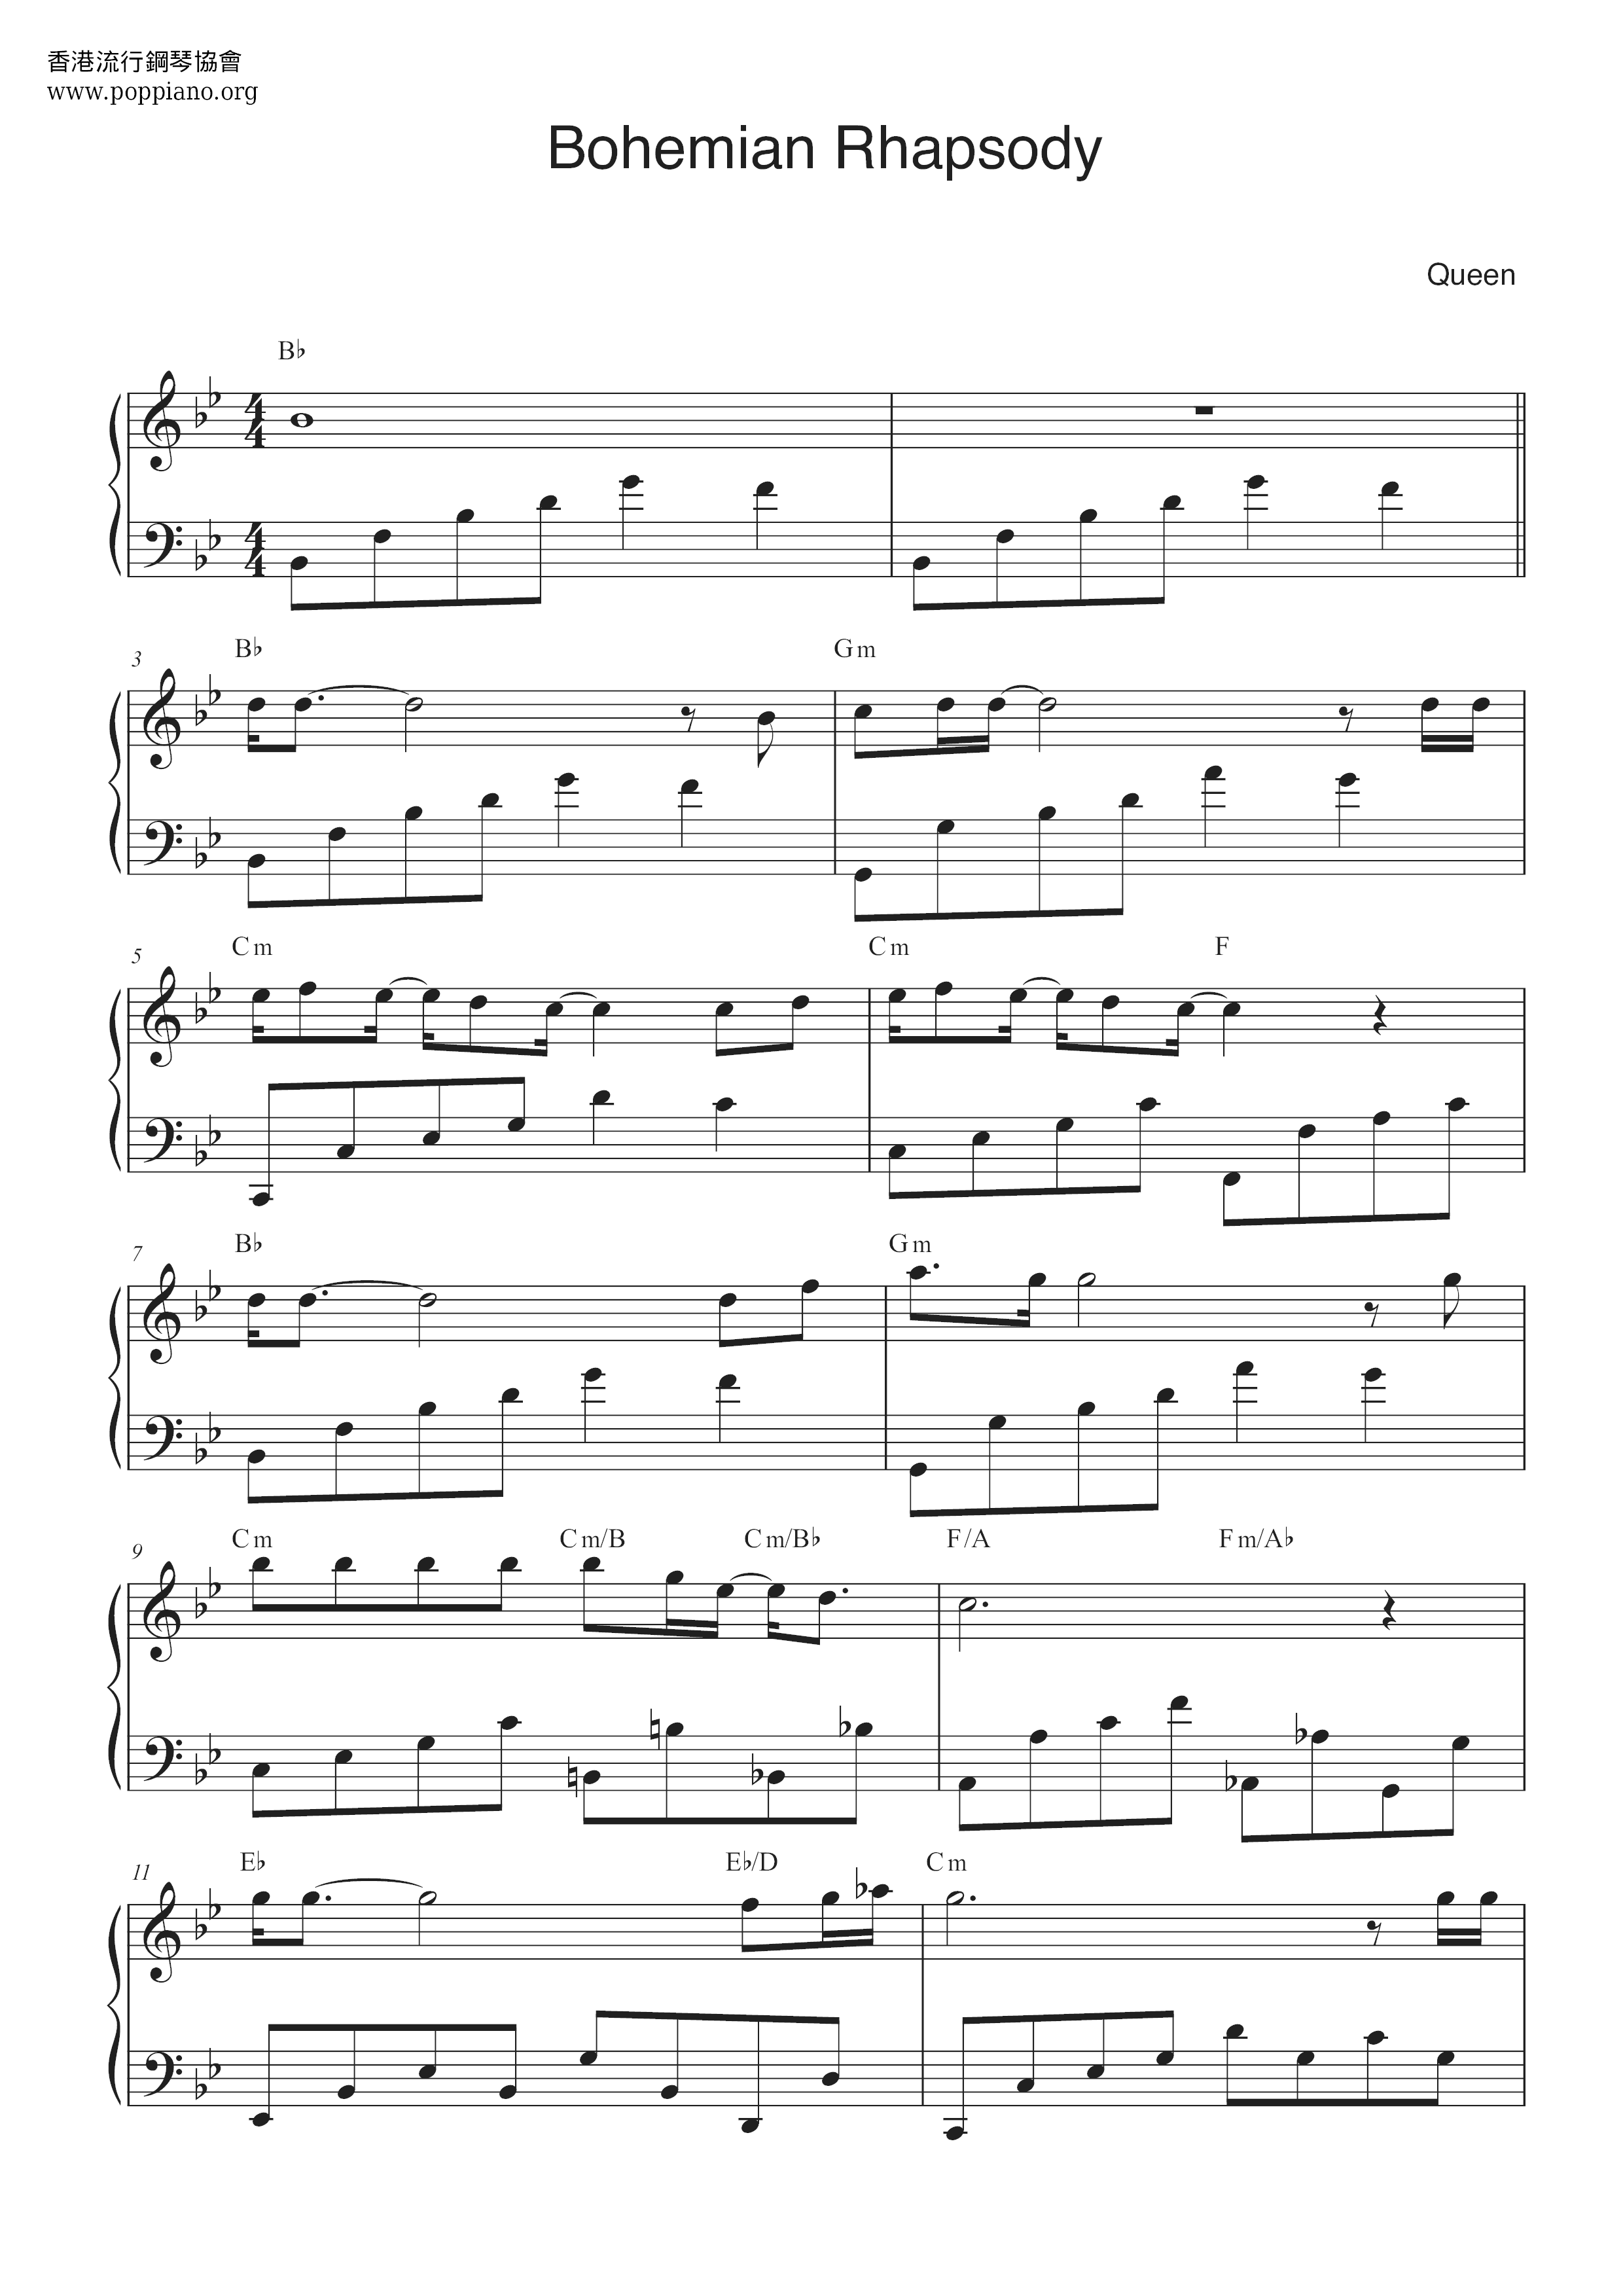 Bohemian Rhapsody Score